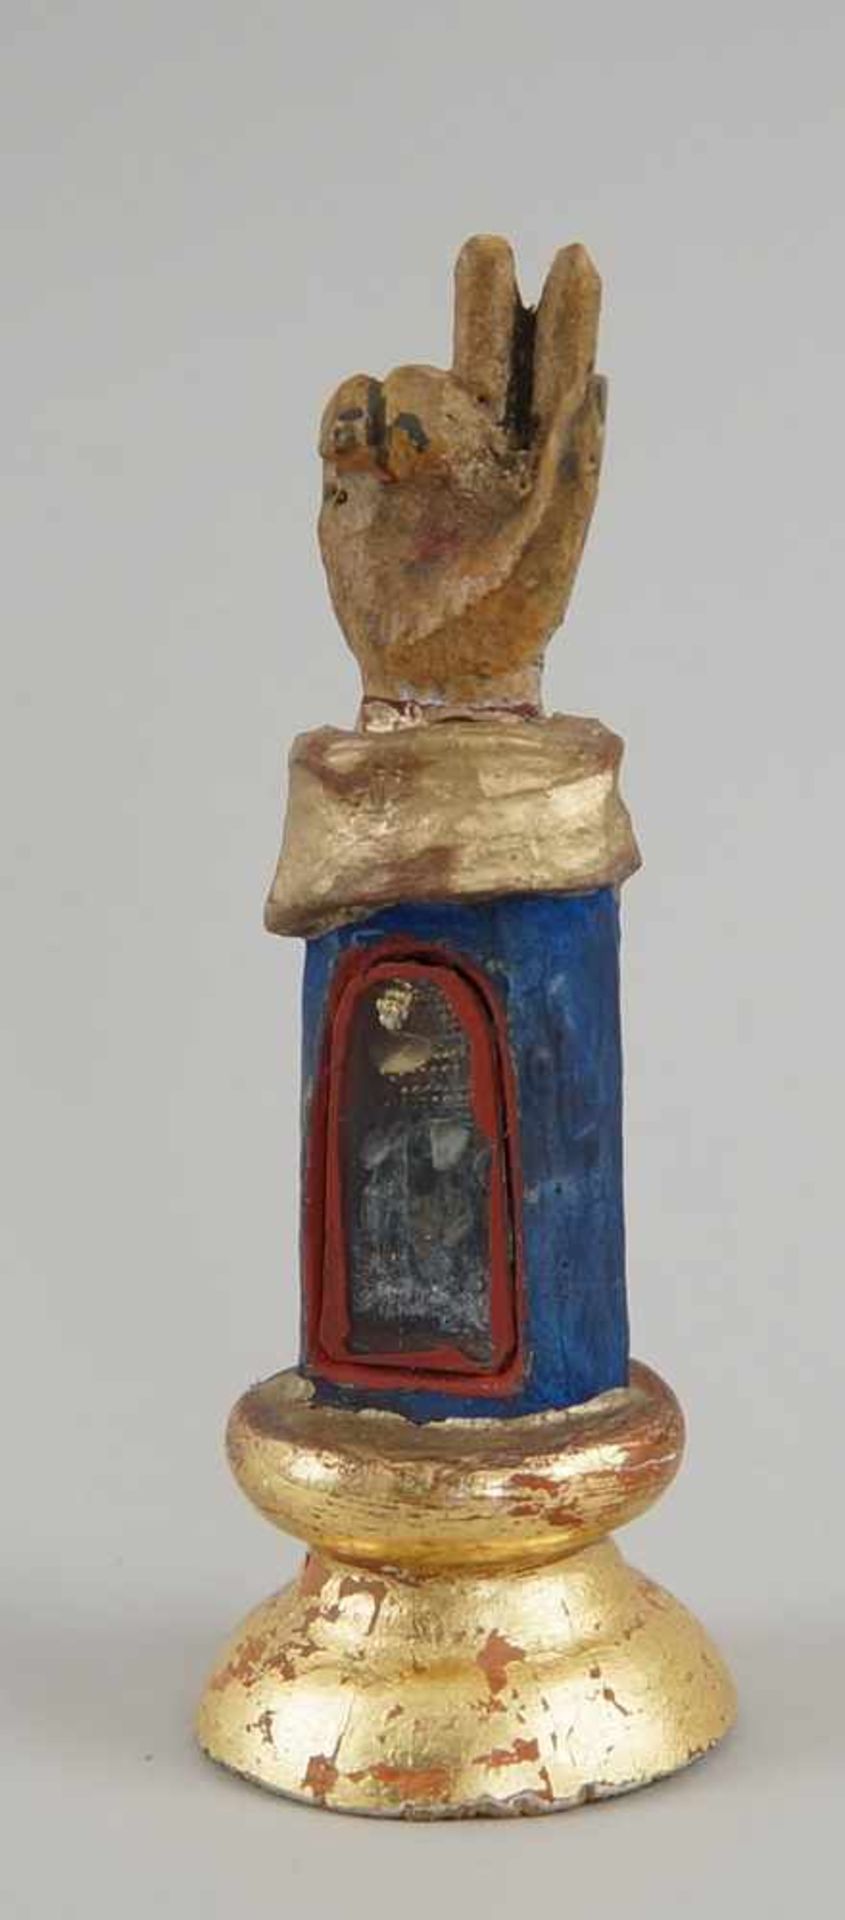 Reliquien Hand, Holz geschnitzt und gefasst, mit Reliquie hinter Glas, H 12cm- - -24.00 % buyer's - Bild 4 aus 7